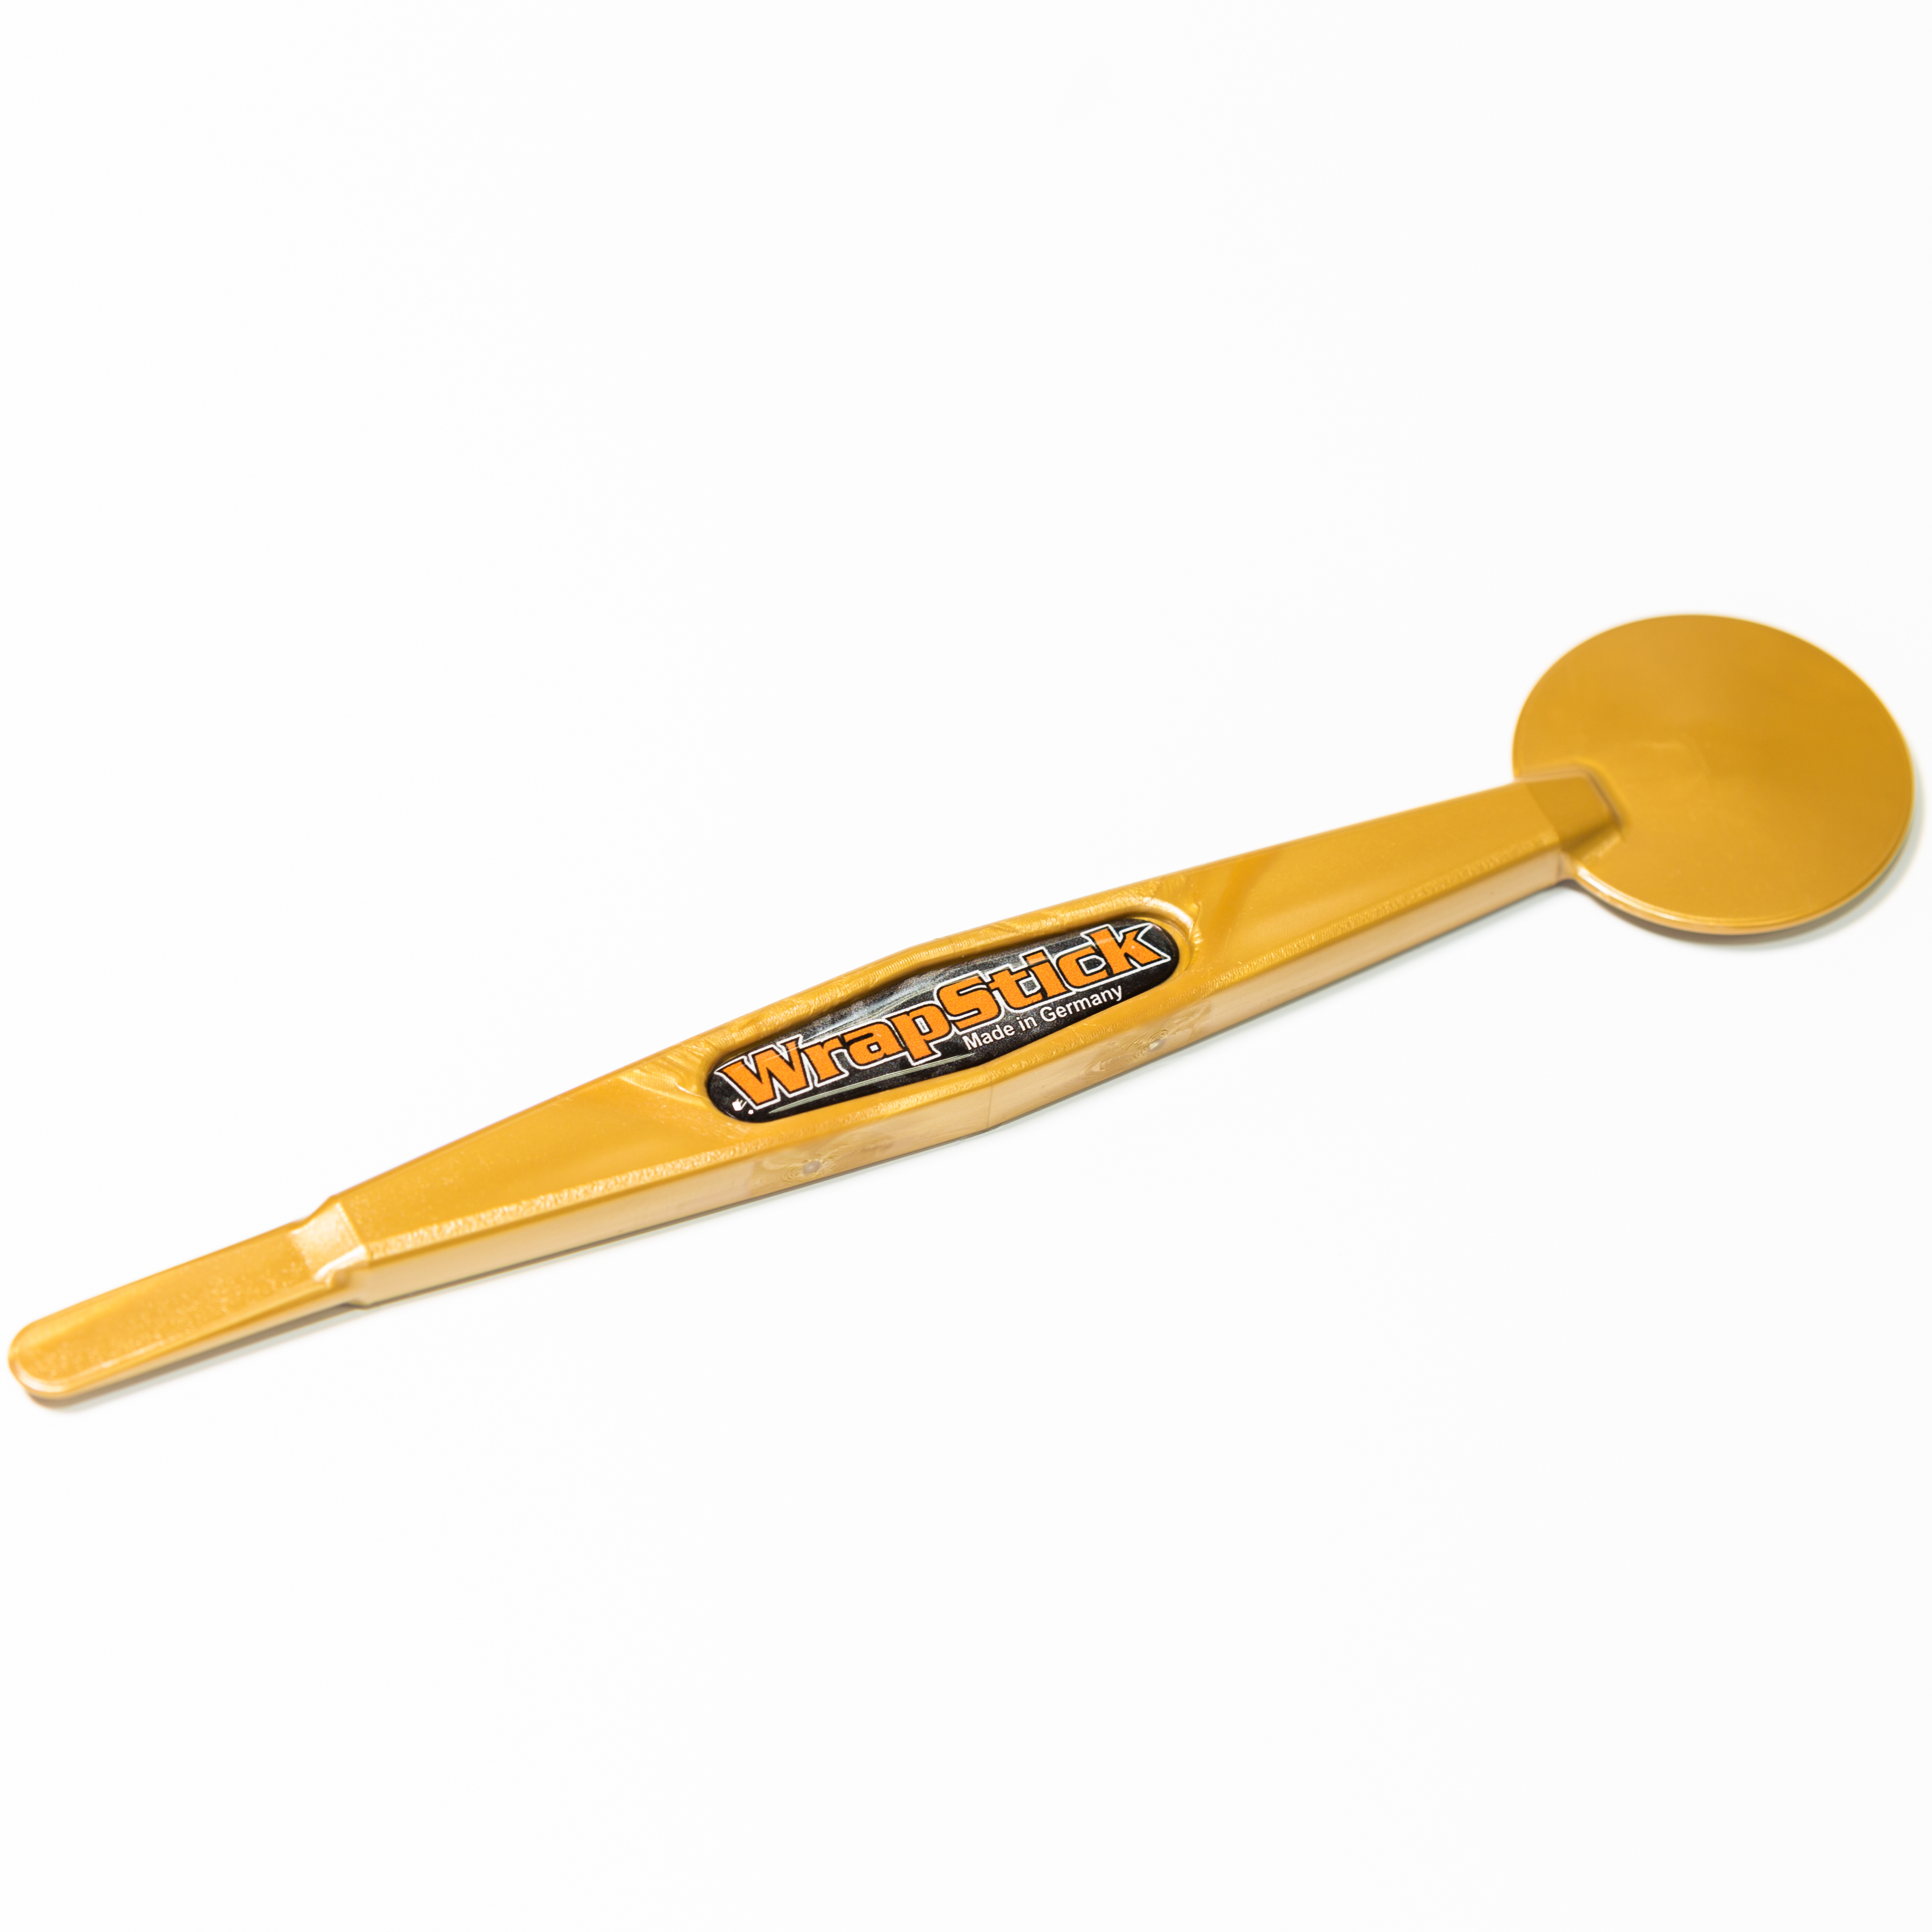 Установочный инструмент WrapStick Betty, жесткость 72, золотой